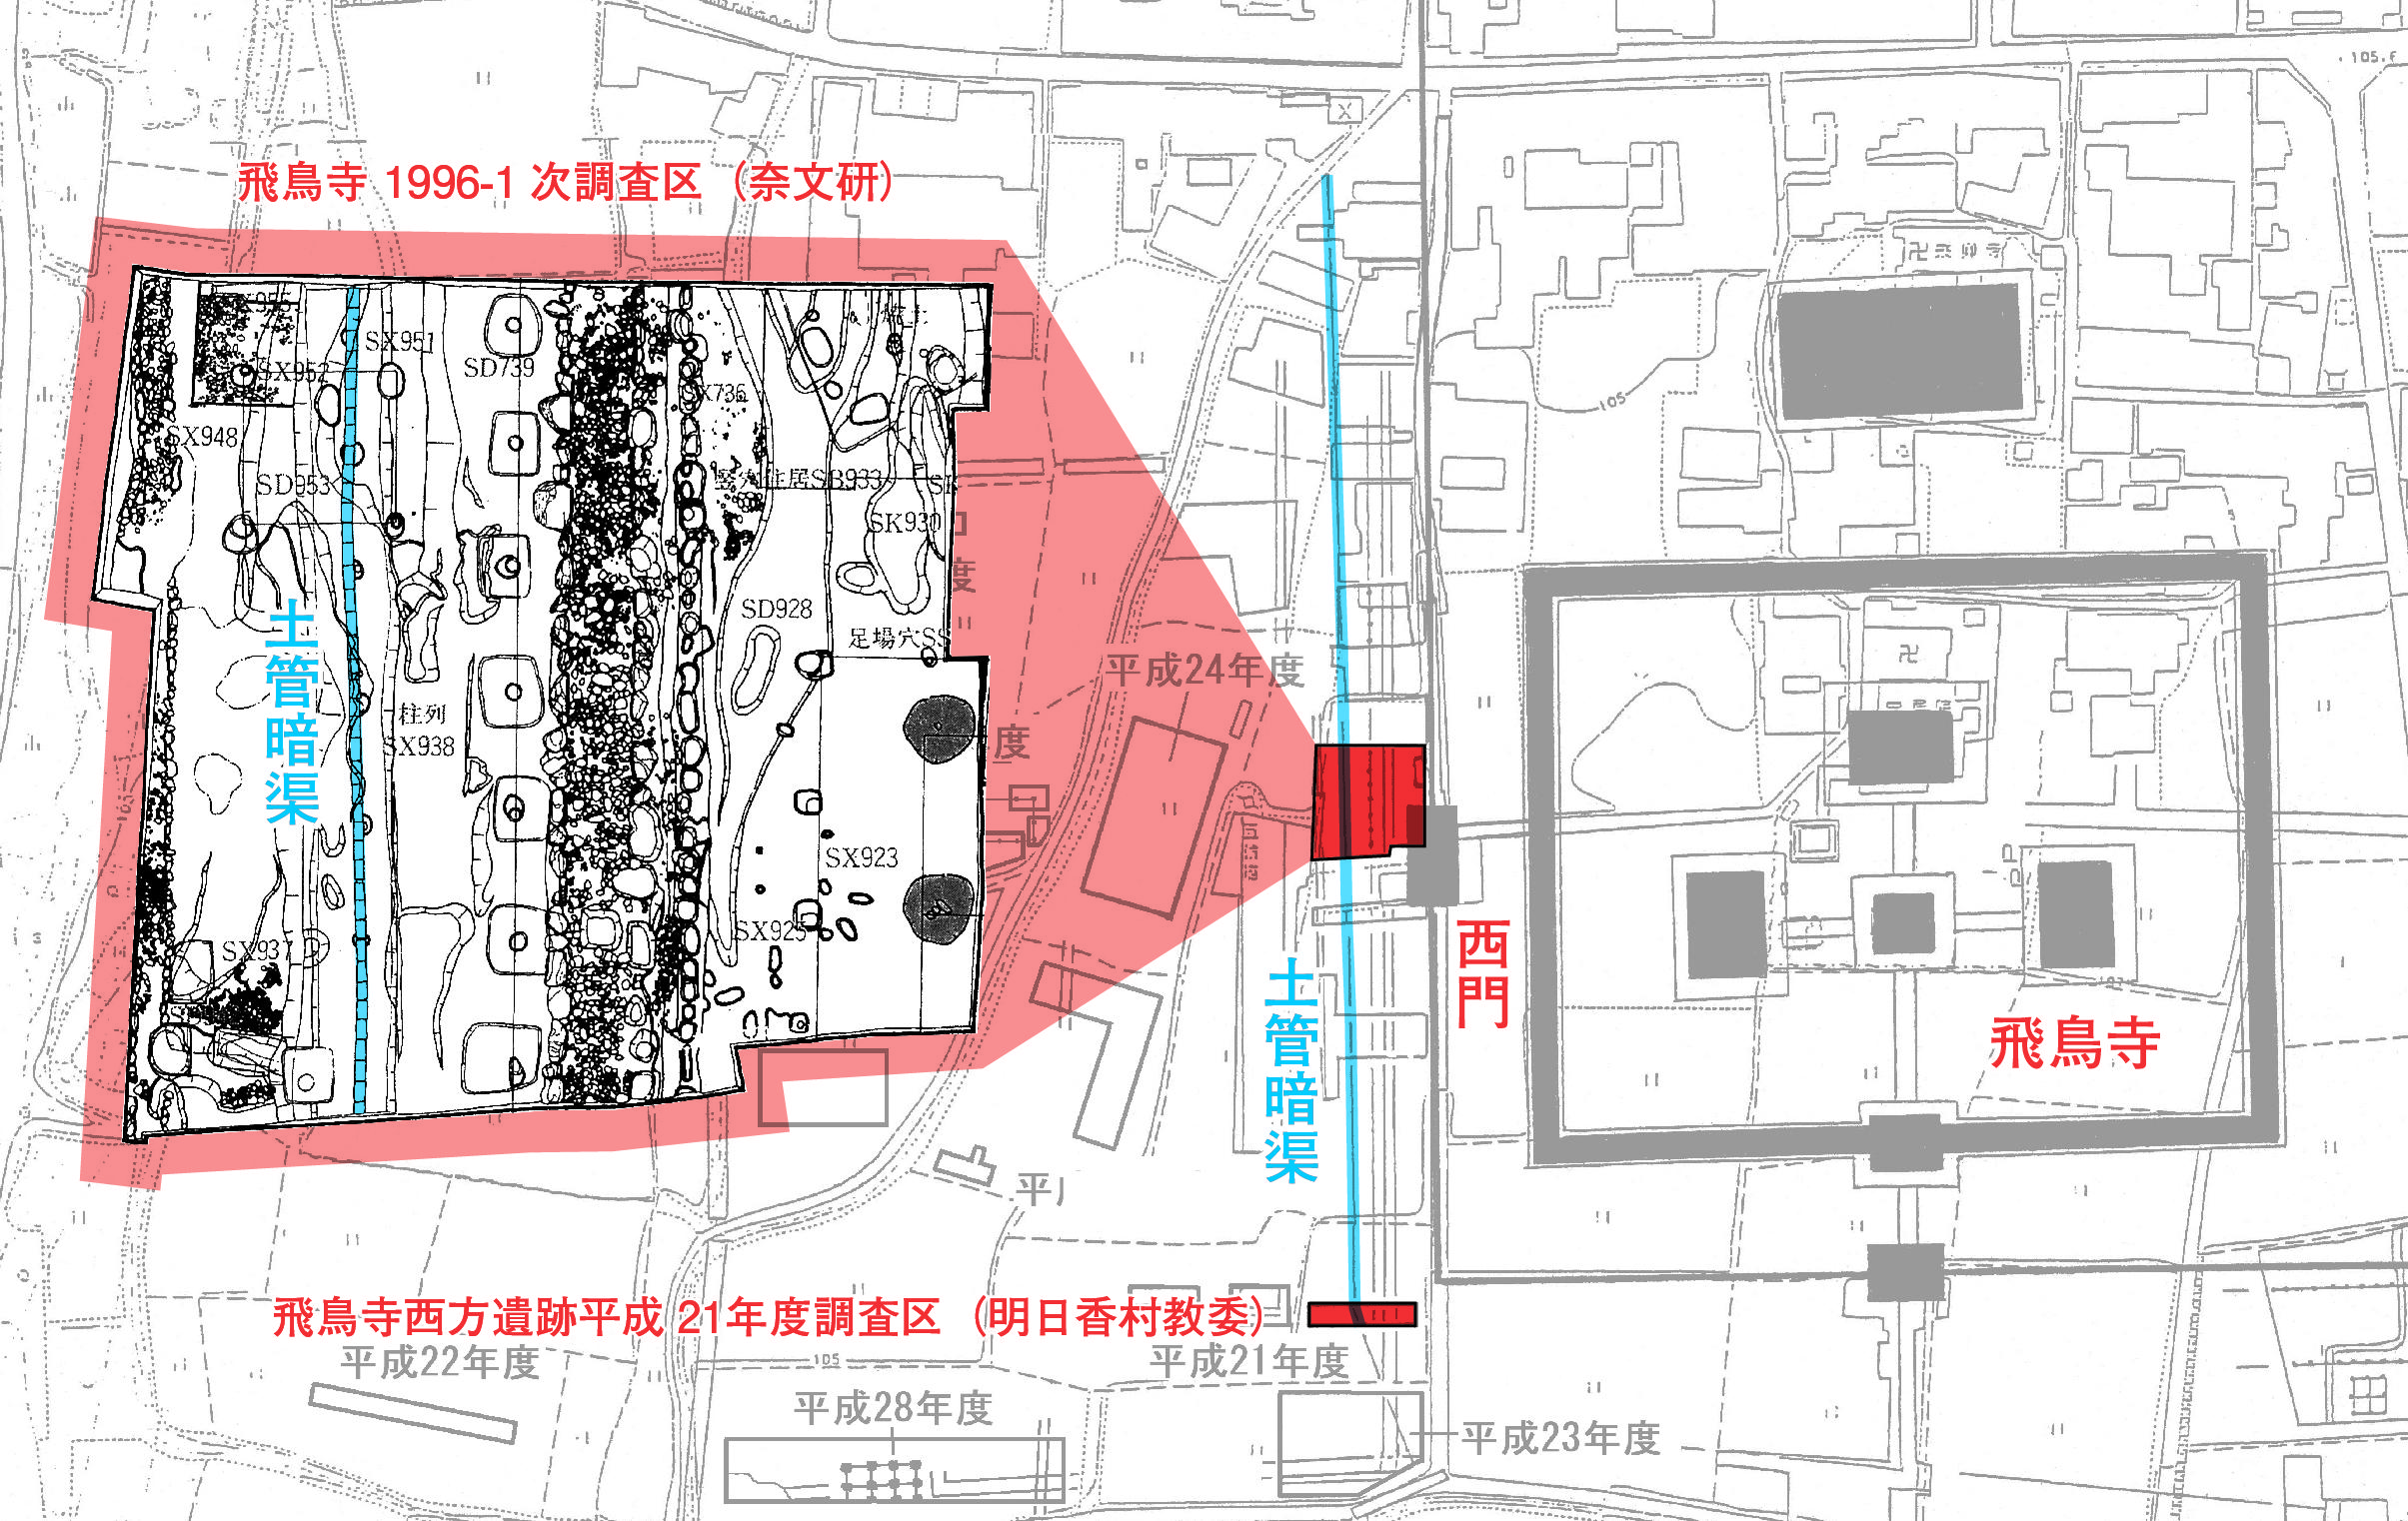 飛鳥寺西門付近の土管発掘地点の地図